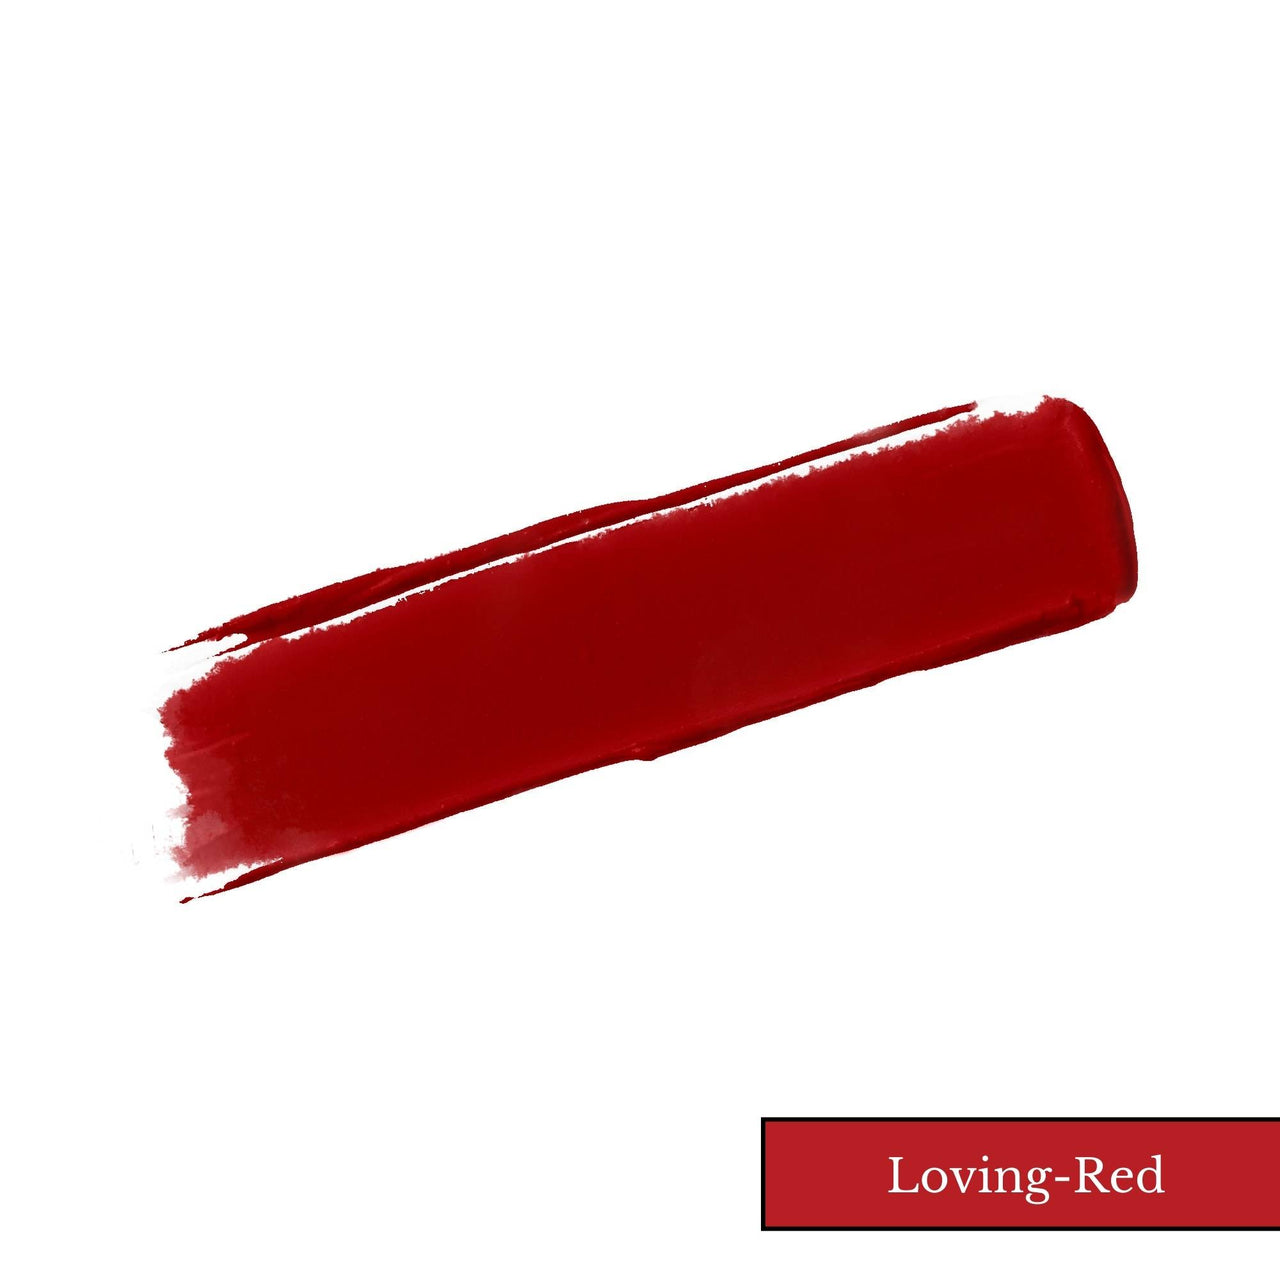 Loving-Red